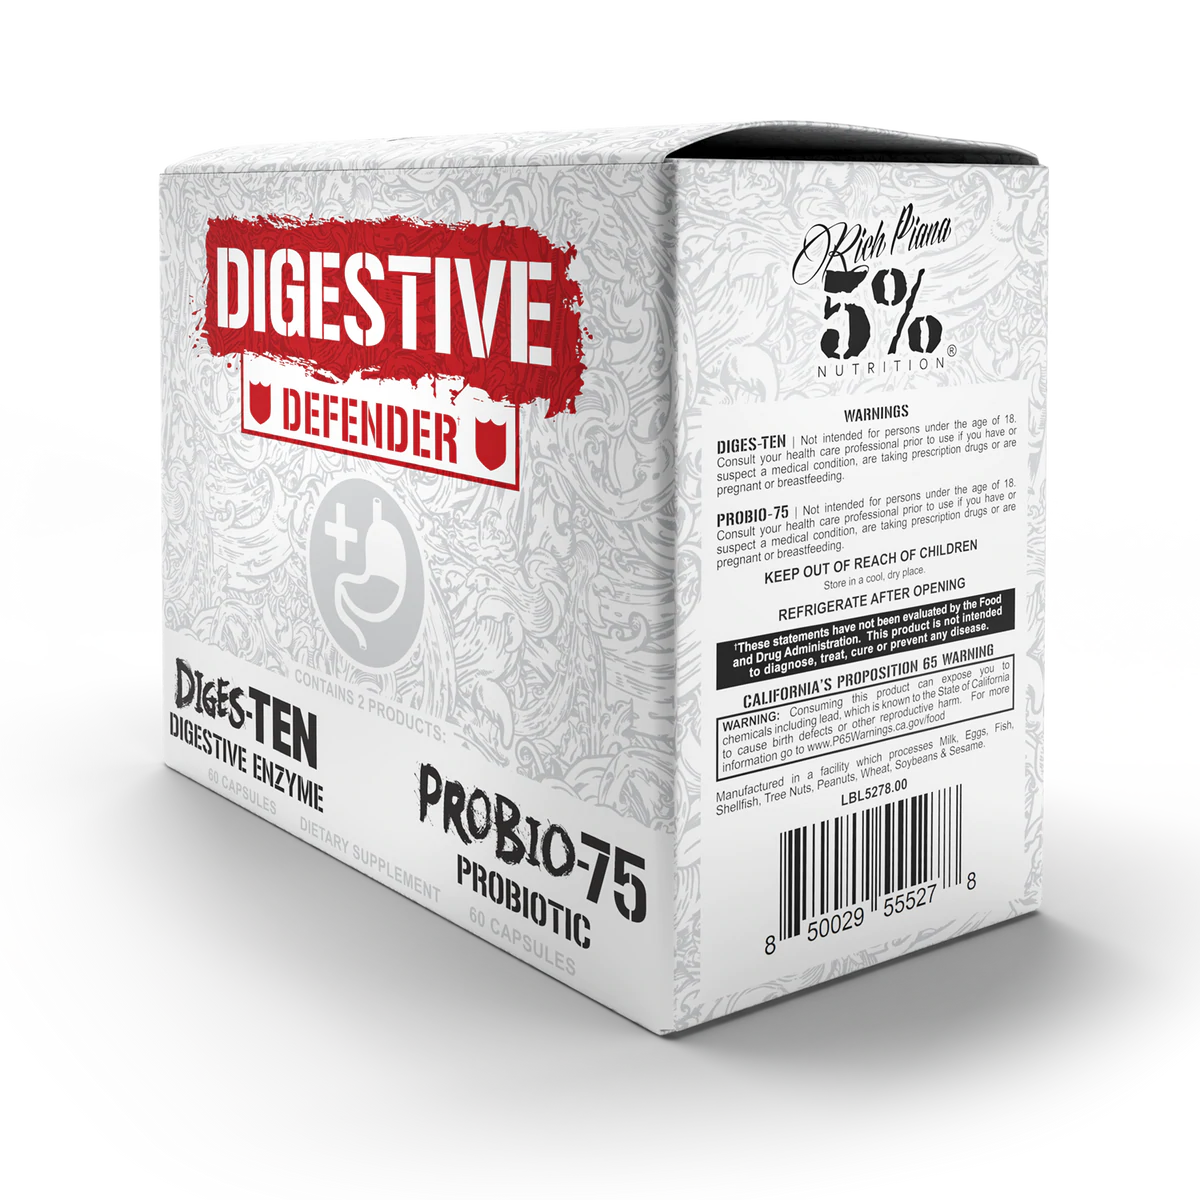 5% Nutrition Digestive Defender